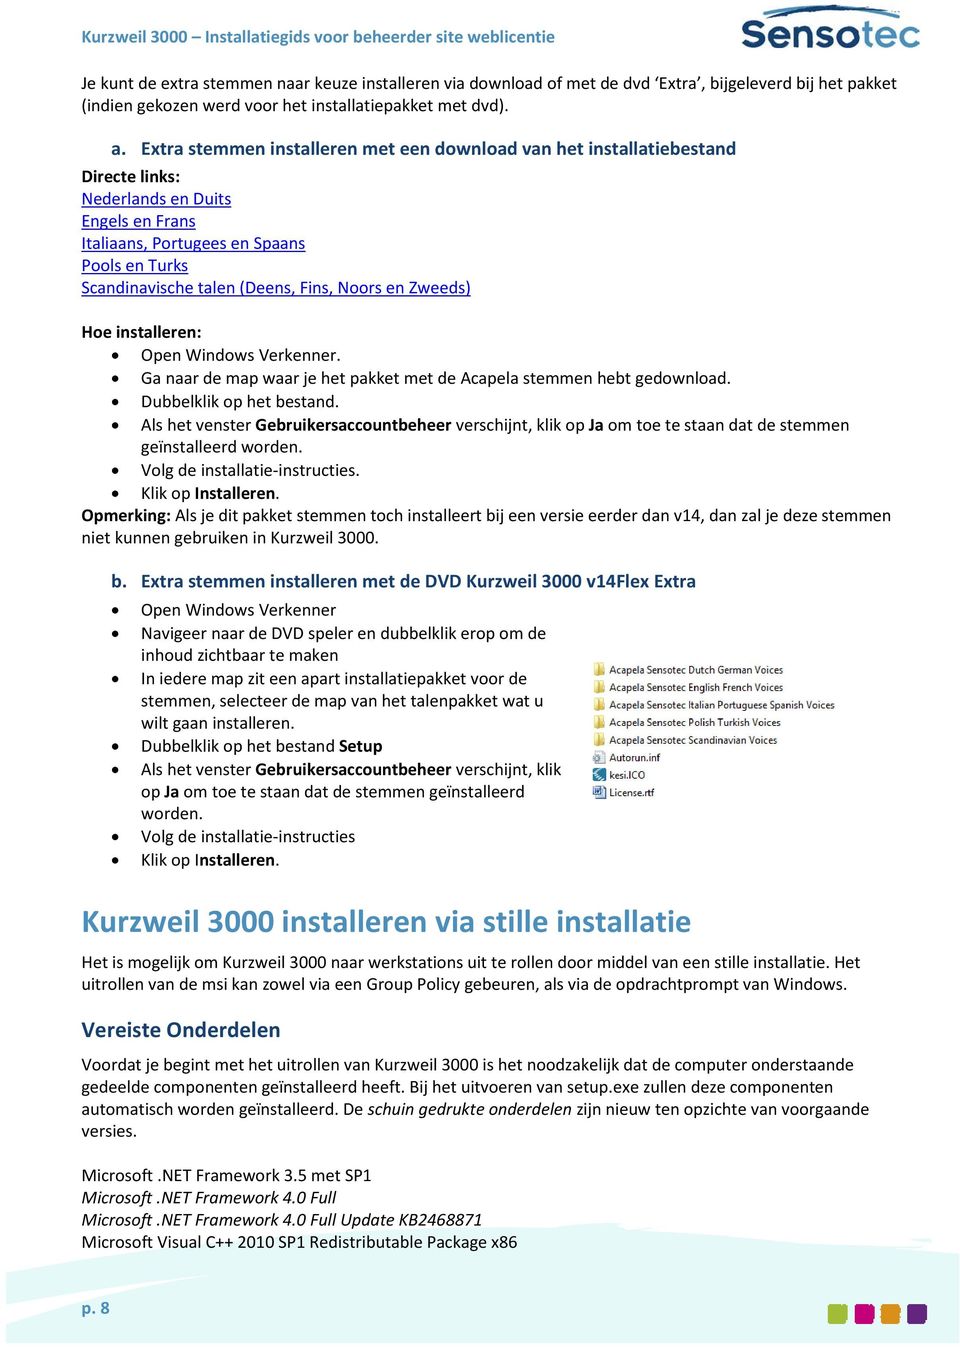 Fins, Noors en Zweeds) Hoe installeren: Open Windows Verkenner. Ga naar de map waar je het pakket met de Acapela stemmen hebt gedownload. Dubbelklik op het bestand.